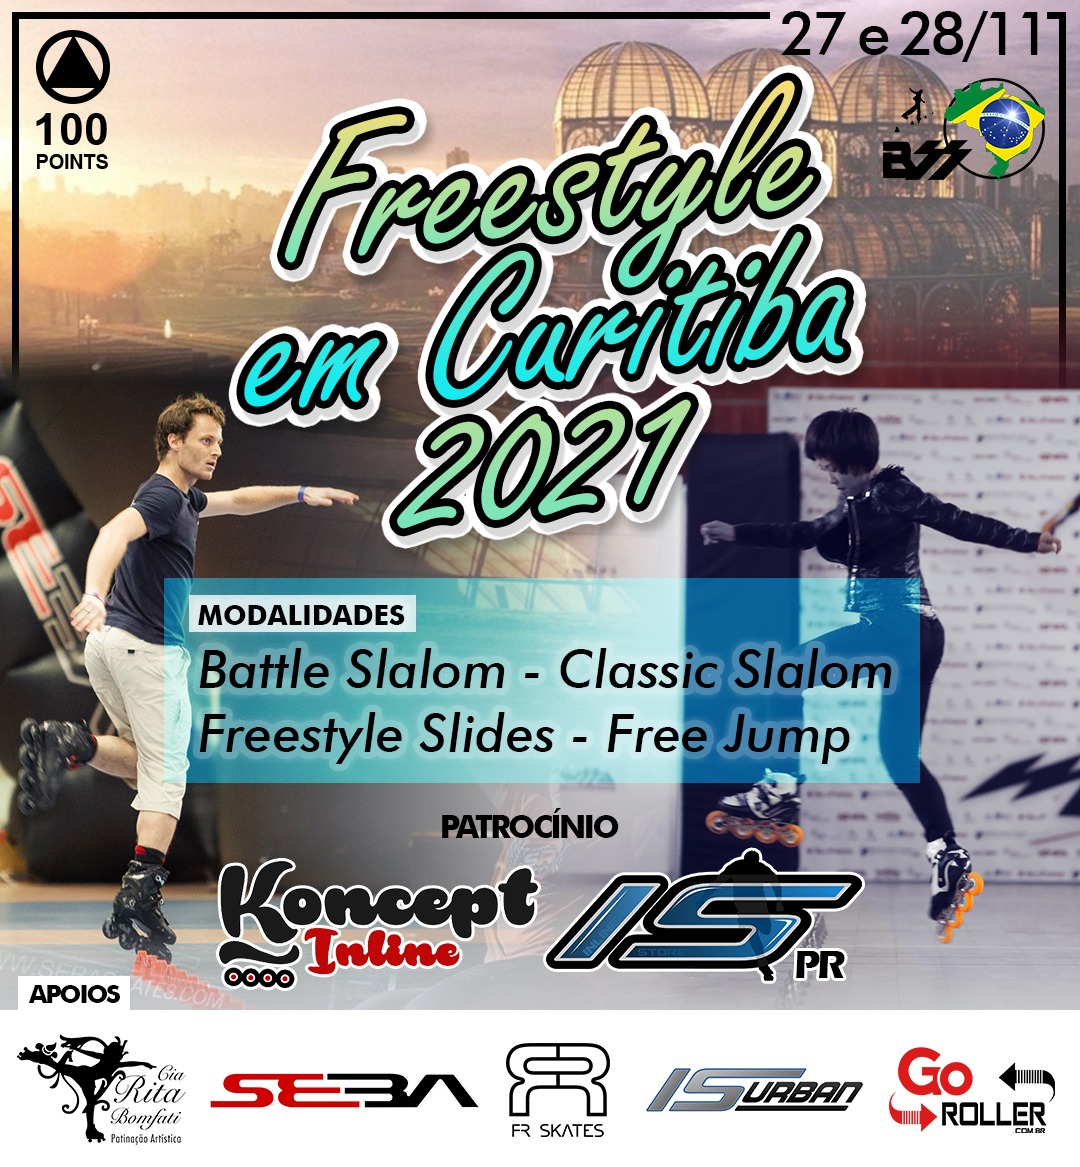 Freestyle em Curitiba 2021 atualizado.jpg